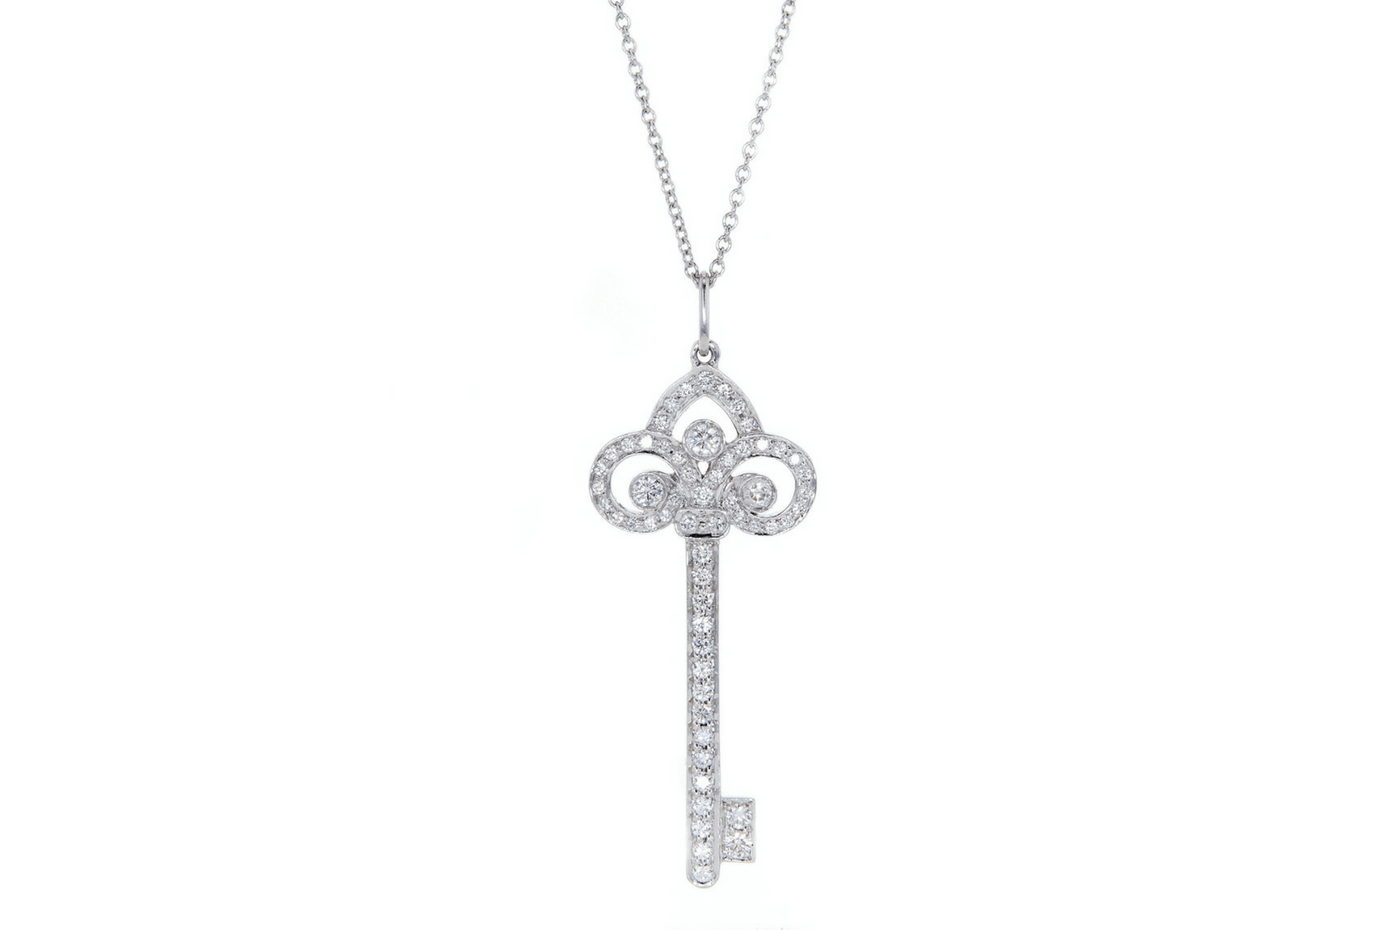 Key pendant from Tiffany & Co.